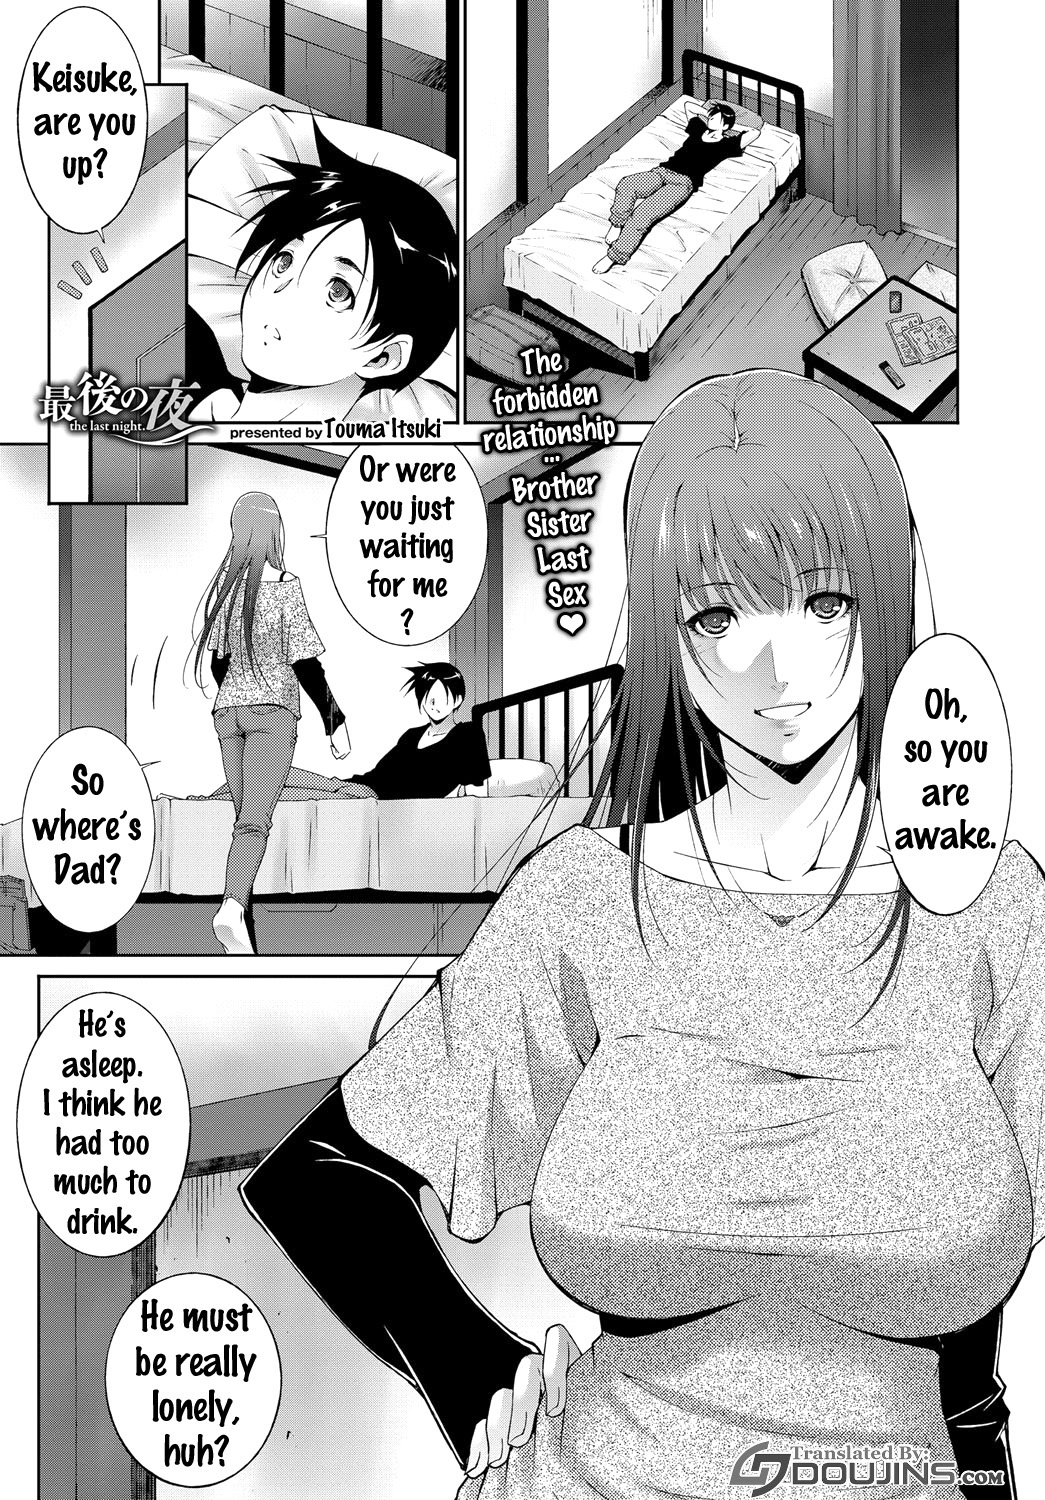 Sister and brother sex manga by Touma Itsuki - Saigo no Yoru the last night